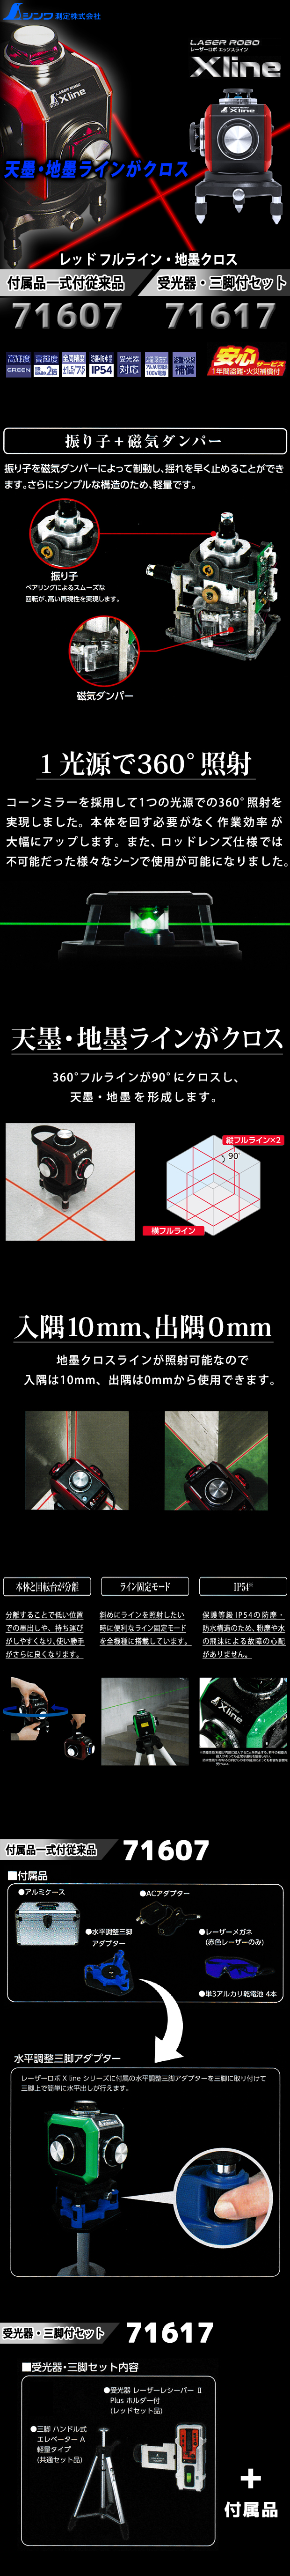 シンワ　振り子式墨出器 レーザーロボ X line レッド